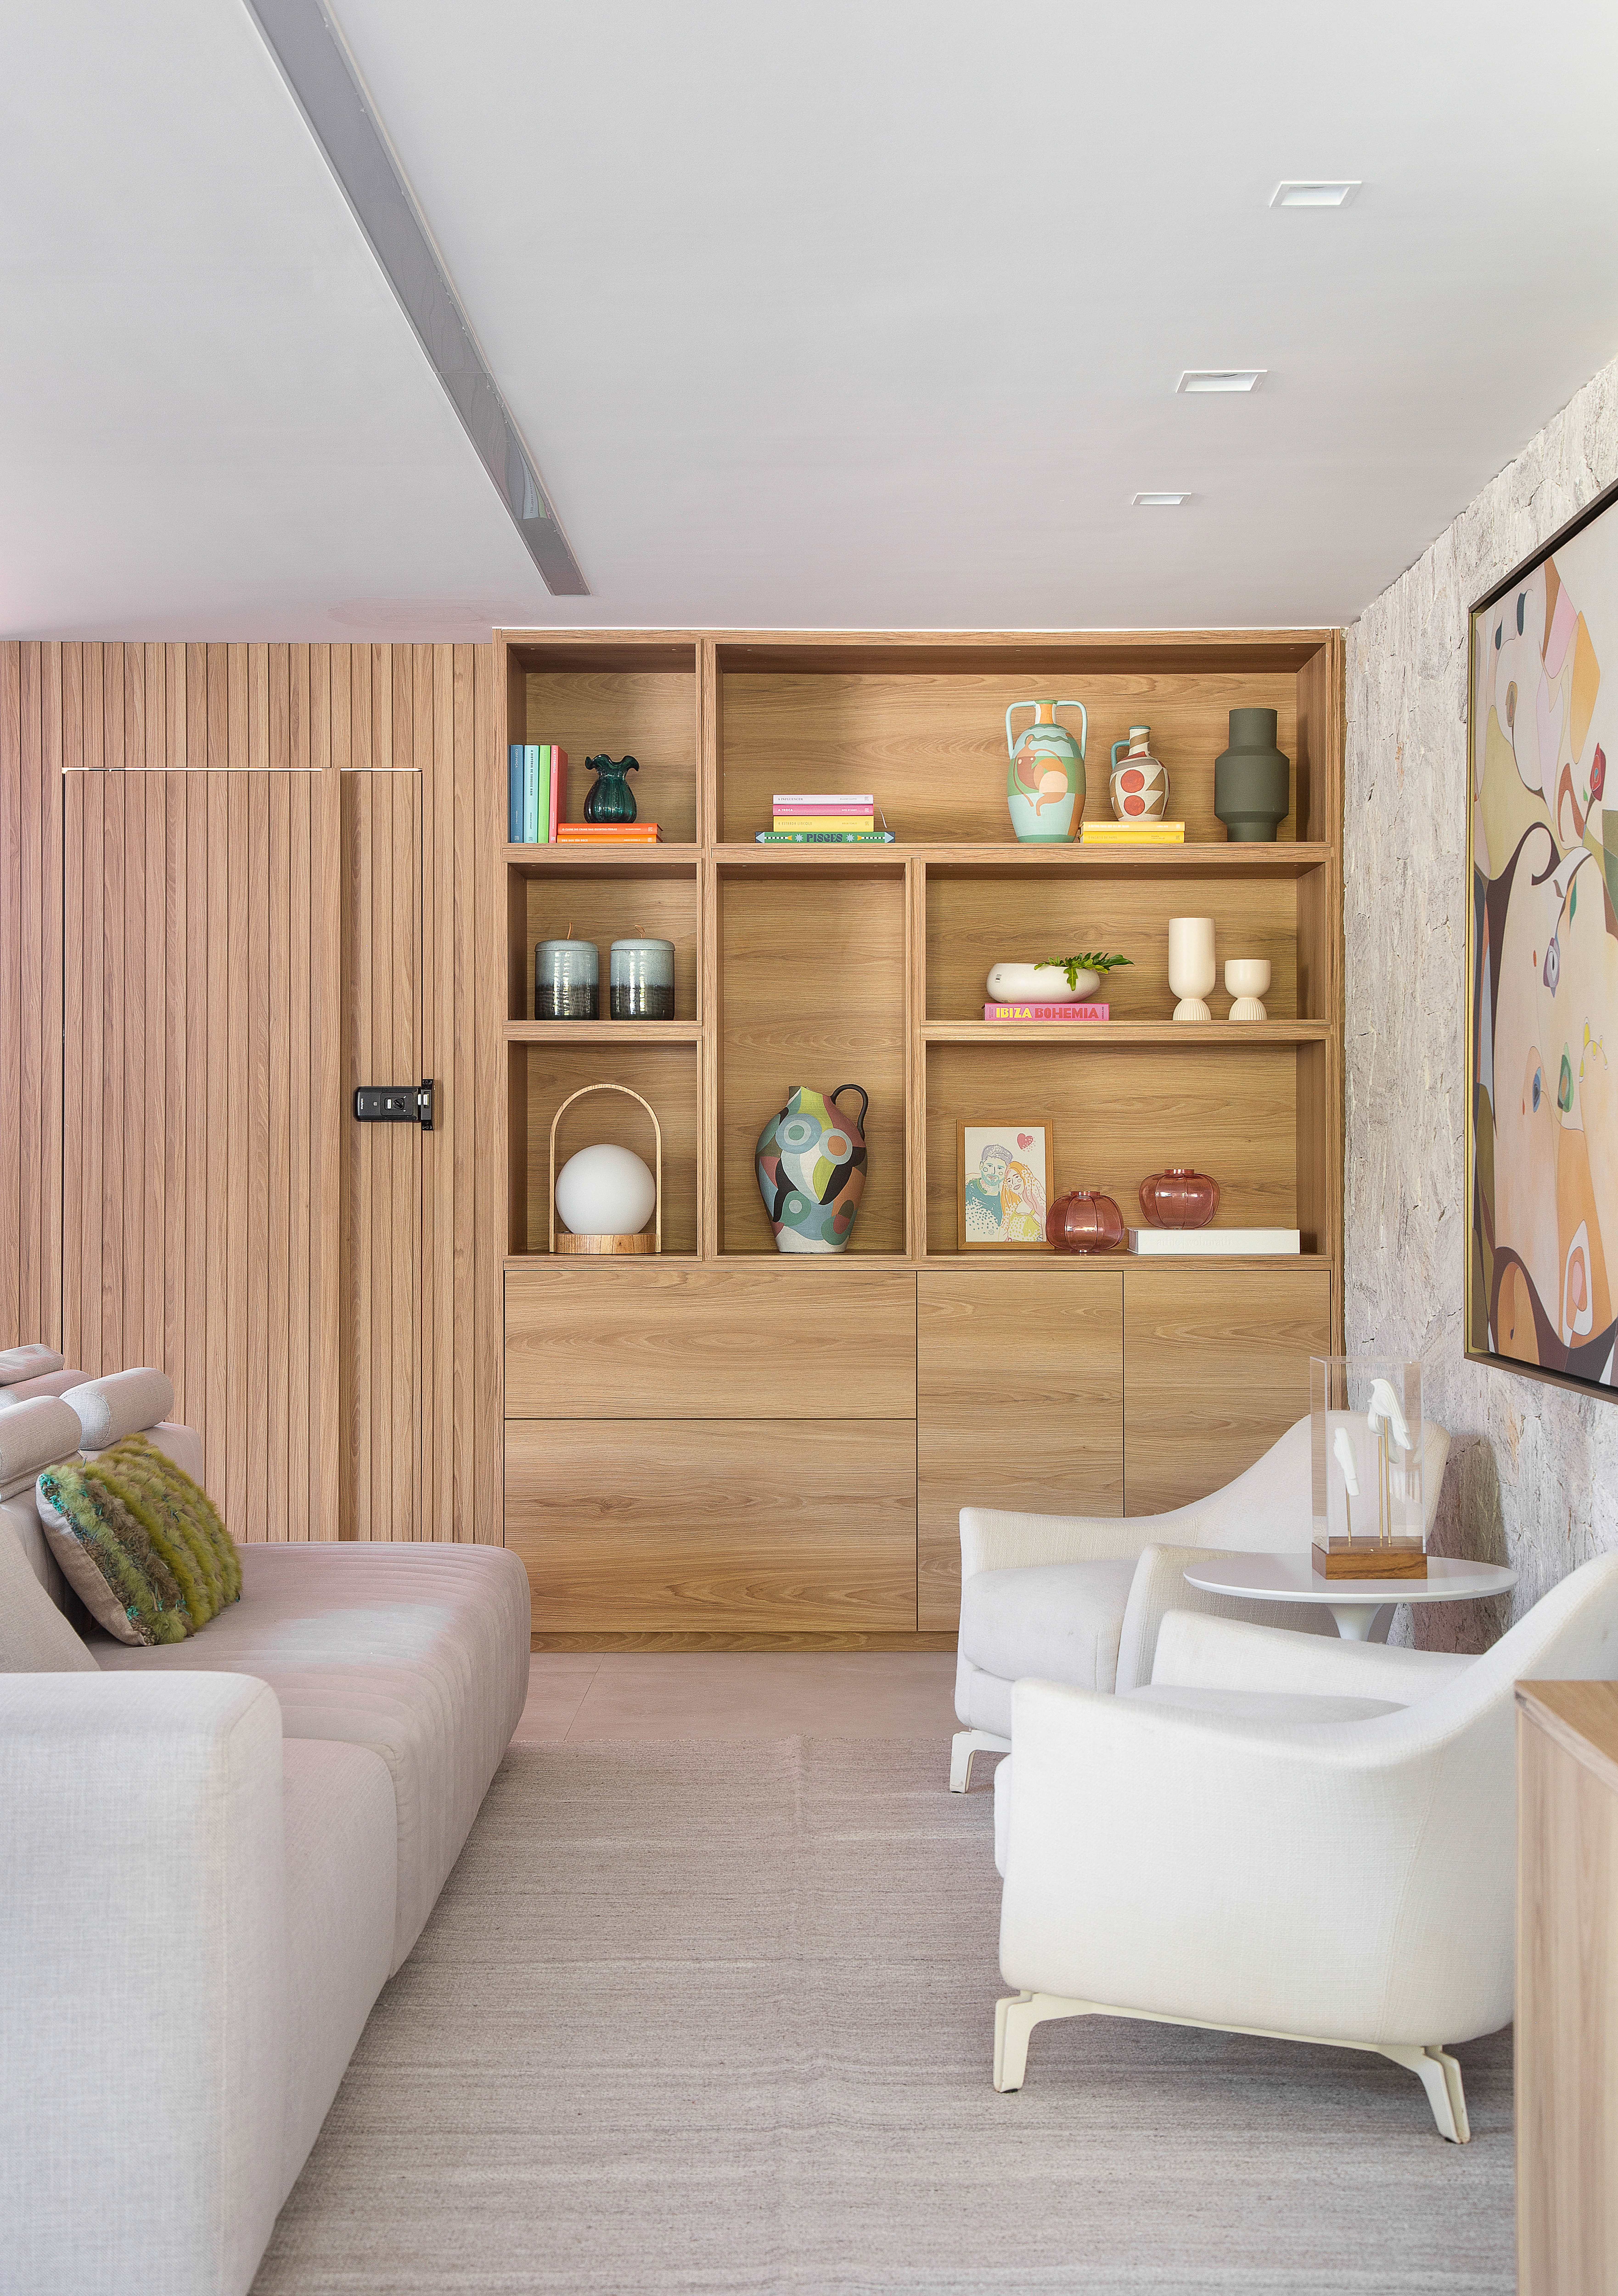 Casa de 300 m² tem cozinha verde oliva e área gourmet em contêiner. Projeto de Lana Rocha. Na foto, sala com poltronas, sofá e parede revestida de pedra.